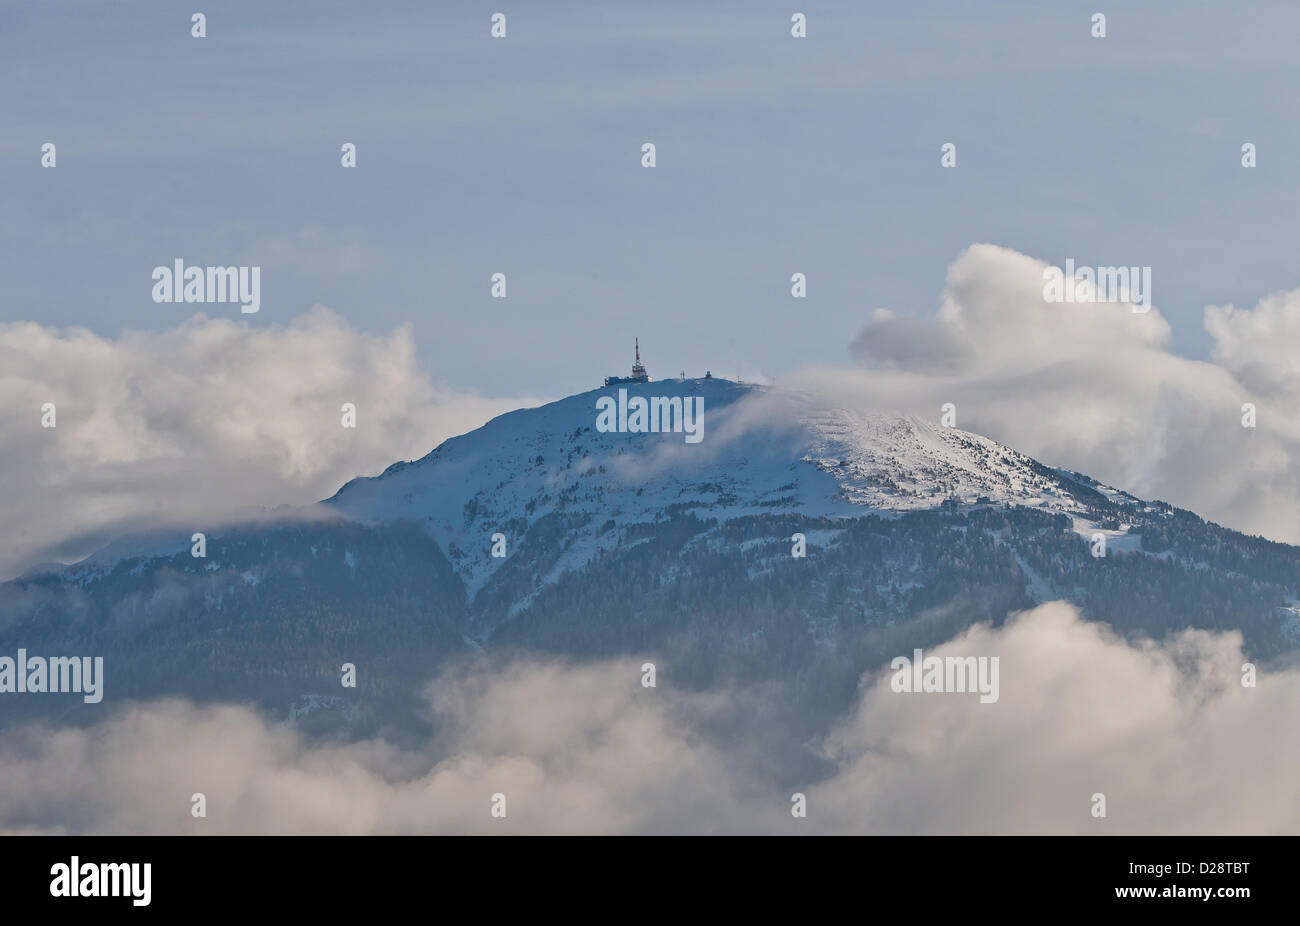 Una vista panoramica del monte Patscherkofel gamma nella distanza nei pressi della città di Innsbruck, Austria, 2 gennaio 2013. Foto: Daniel Karmann Foto Stock